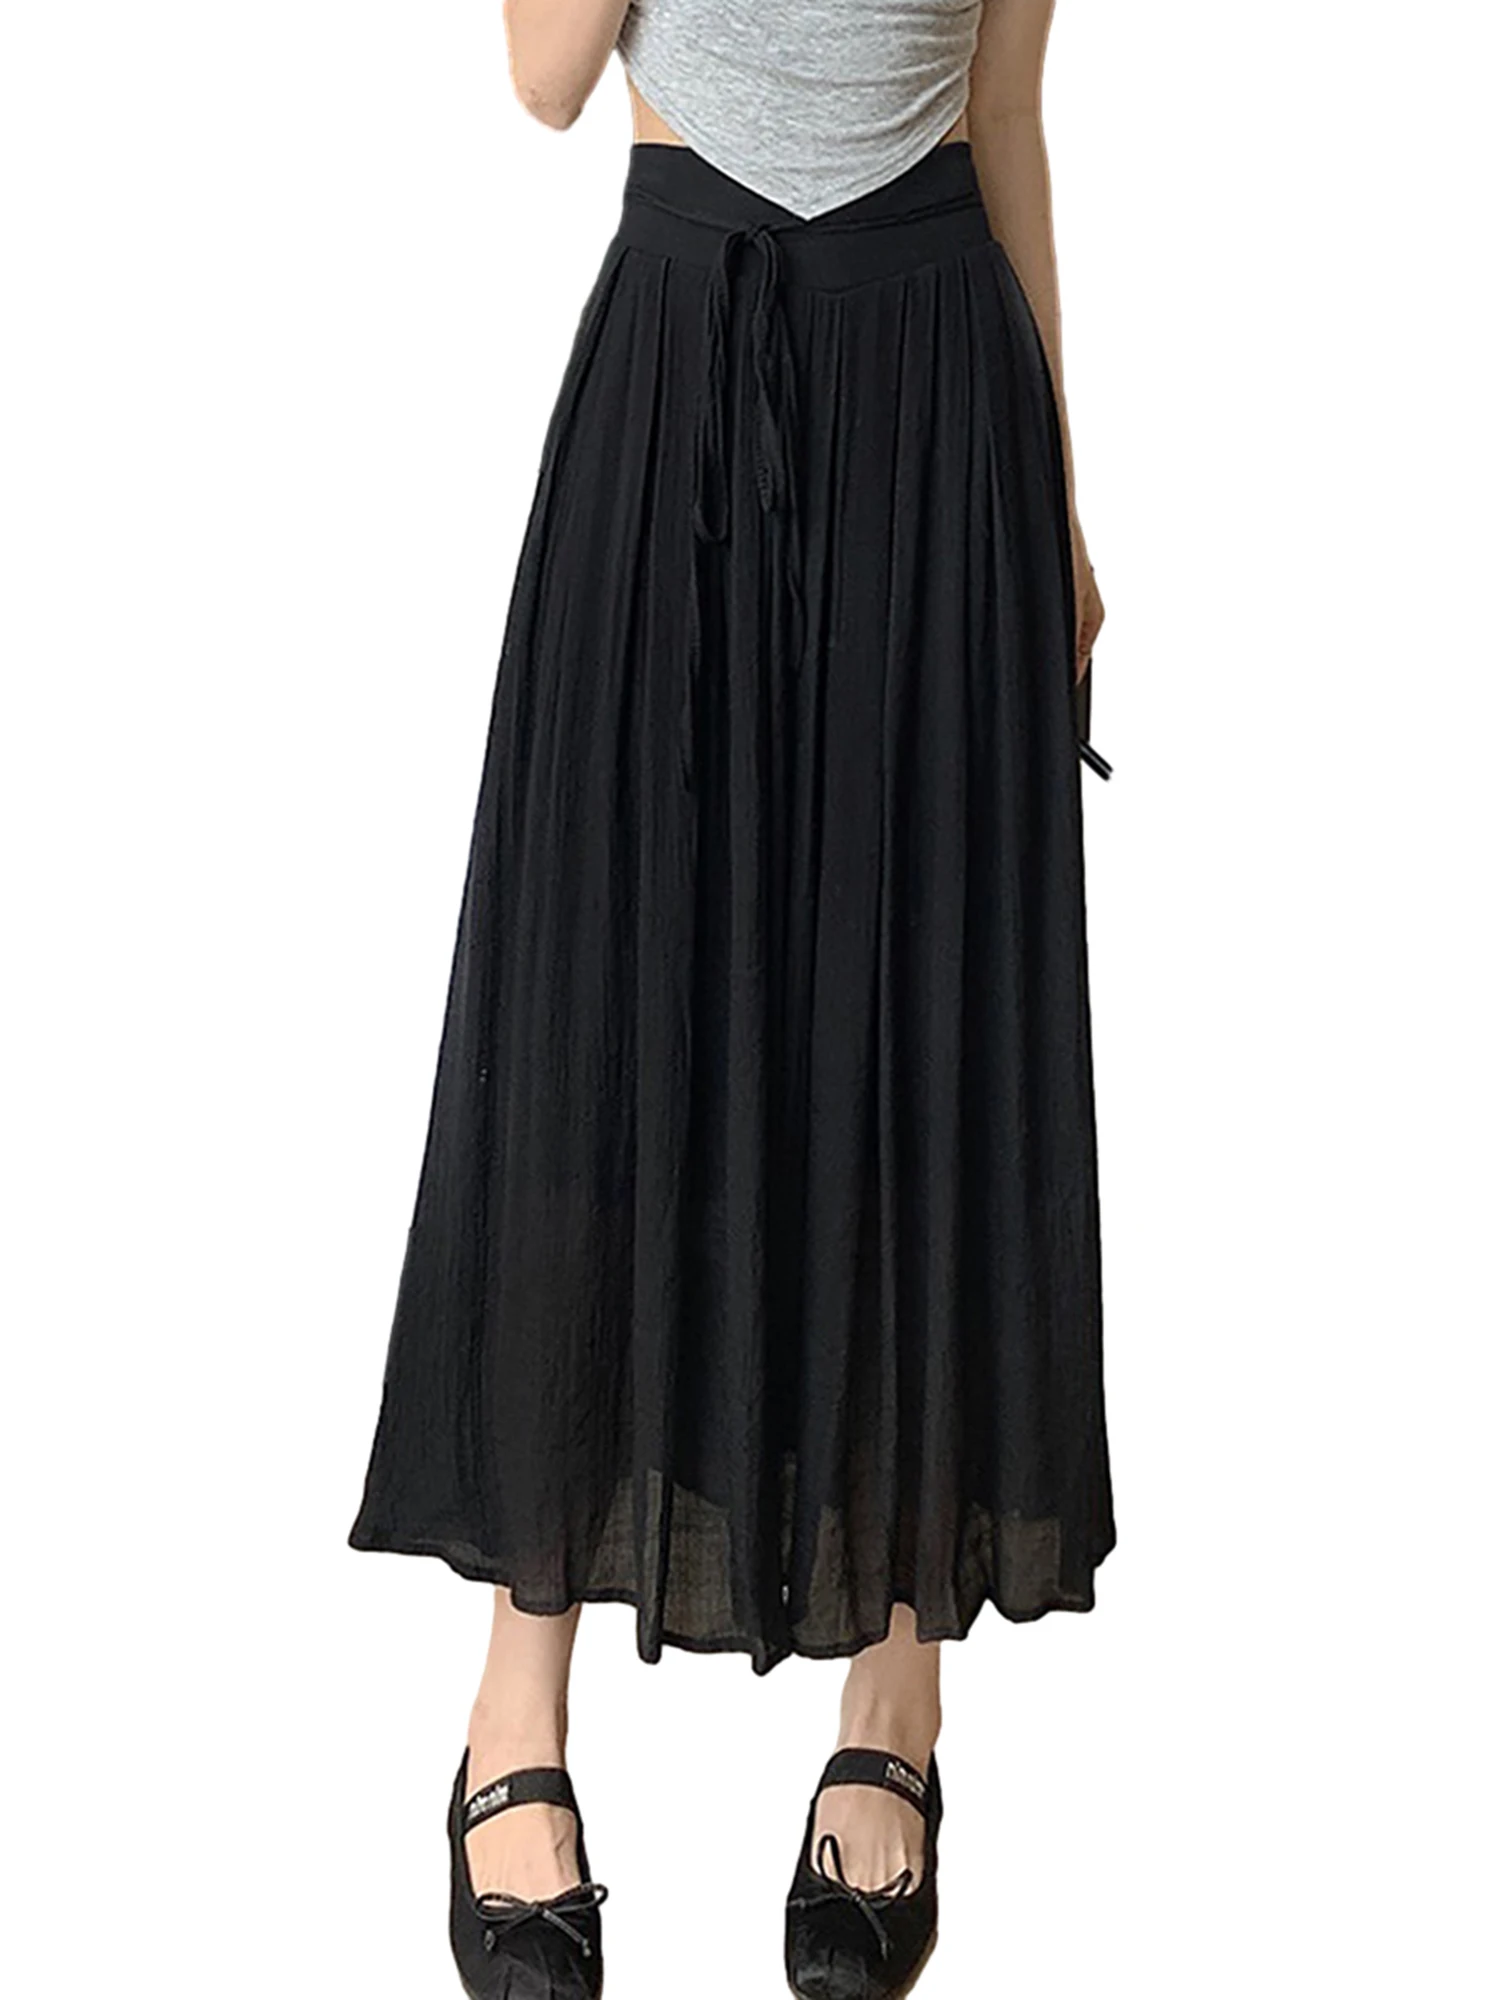 

Женская однотонная Юбка-миди BEAFNKSG, эластичная двухслойная плиссированная юбка с высокой талией и завязкой, модная повседневная юбка на весну и лето